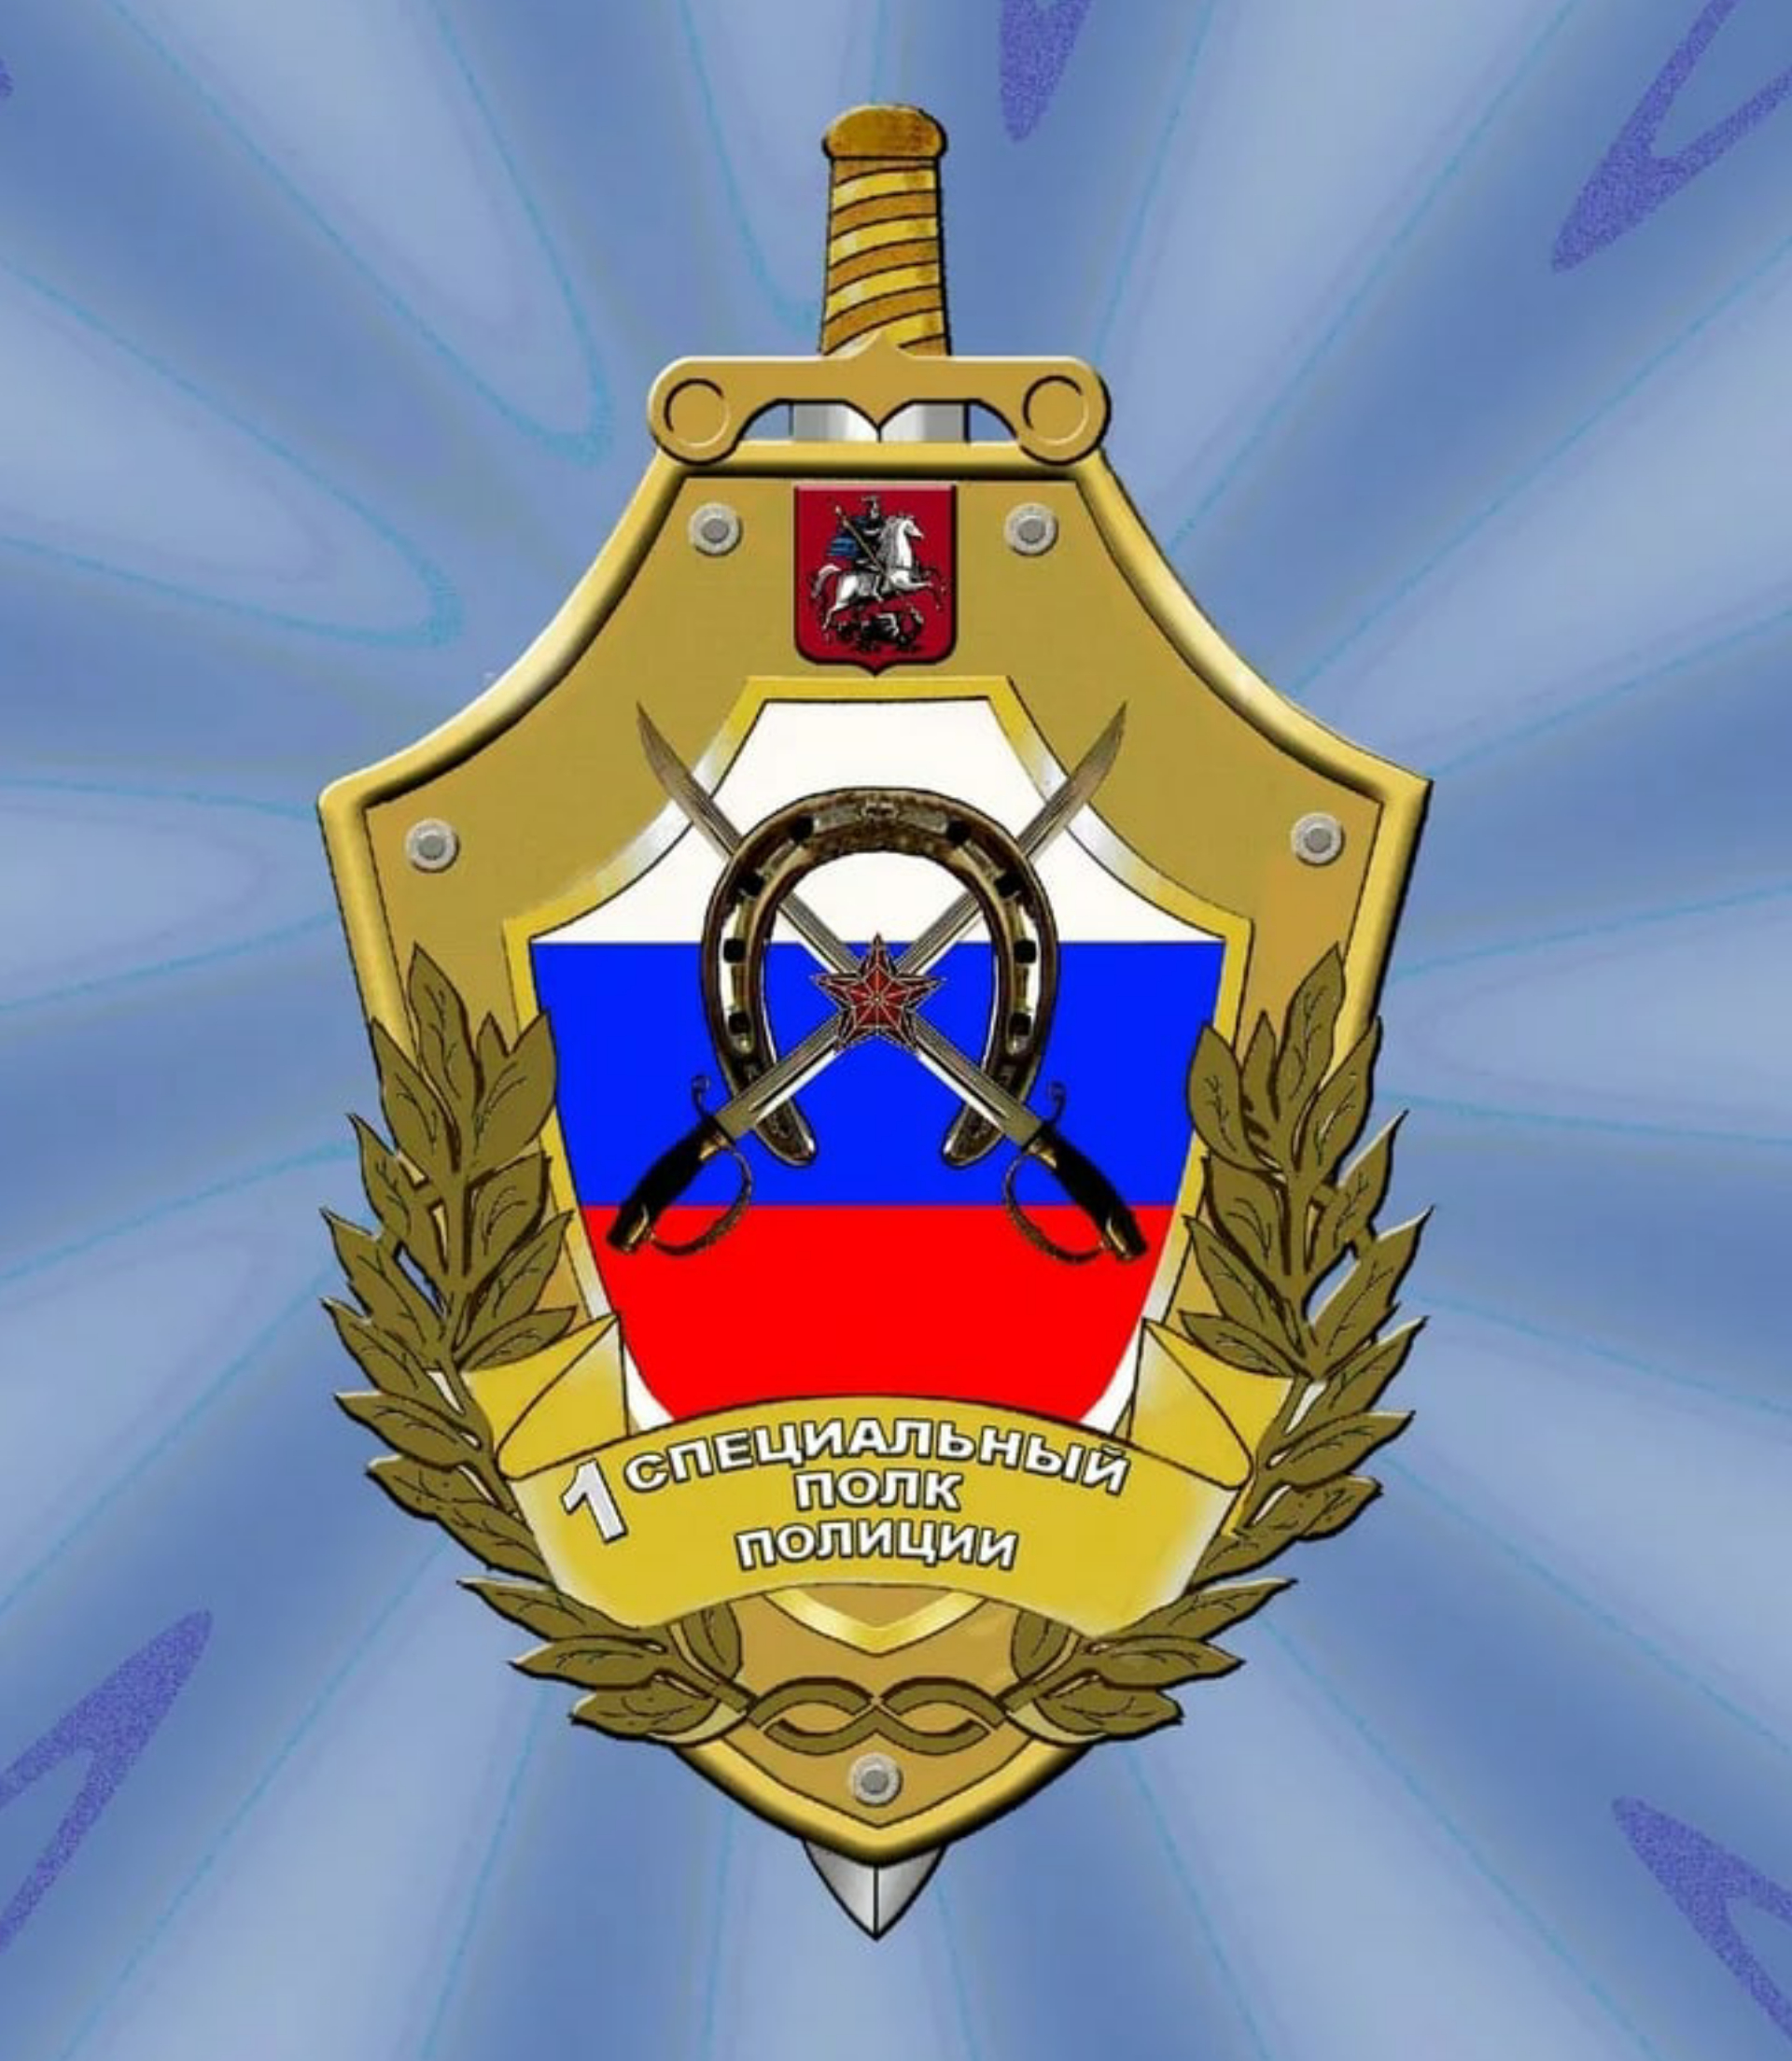 вакансия работодателя 1-й специальный полк полиции ГУ МВД России по г. Москве